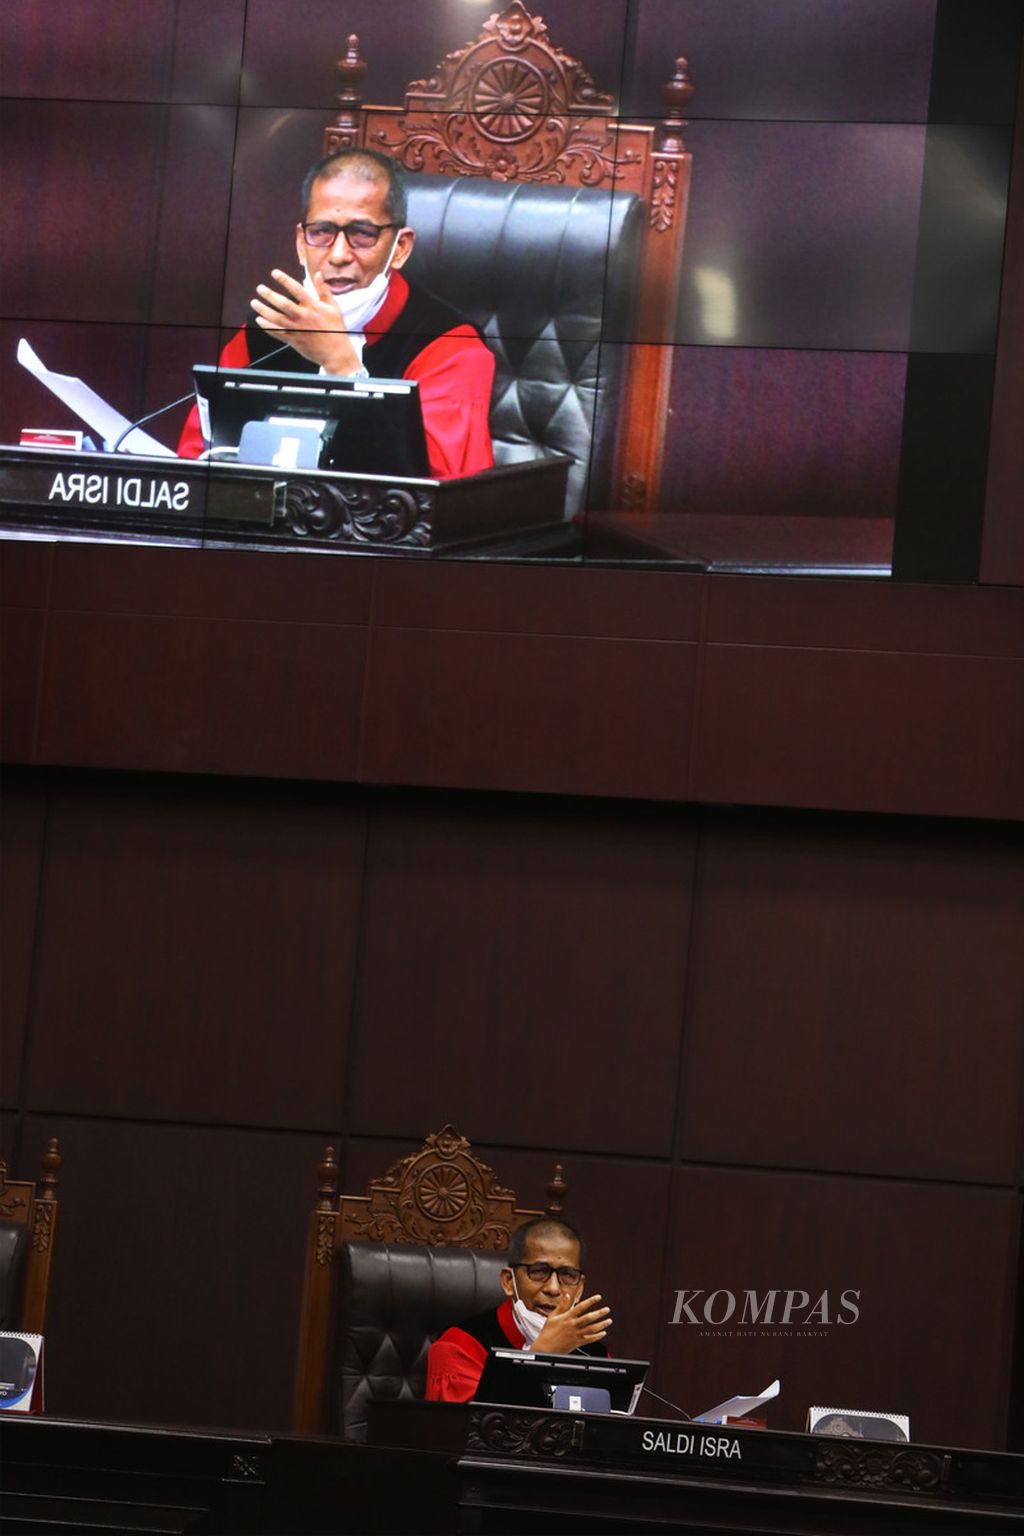 Hakim Mahkamah Konstitusi, Saldi Isra, melontarkan pertanyaan kepada ahli yang dihadirkan dalam persidangan permohonan pengujian atas Undang-Undang Republik Indonesia Nomor 19 Tahun 2019 tentang Perubahan Kedua Atas Undang-Undang Nomor 30 Tahun 2002 tentang Komisi Pemberantasan Tindak Pidana Korupsi terhadap Undang-Undang Dasar di Mahkamah Konstitusi, Jakarta, Rabu (24/6/2020). Ahli yang dihadirkan yaitu yaitu Dr Aan Eko Widiarto dan Prof Bagir Manan.